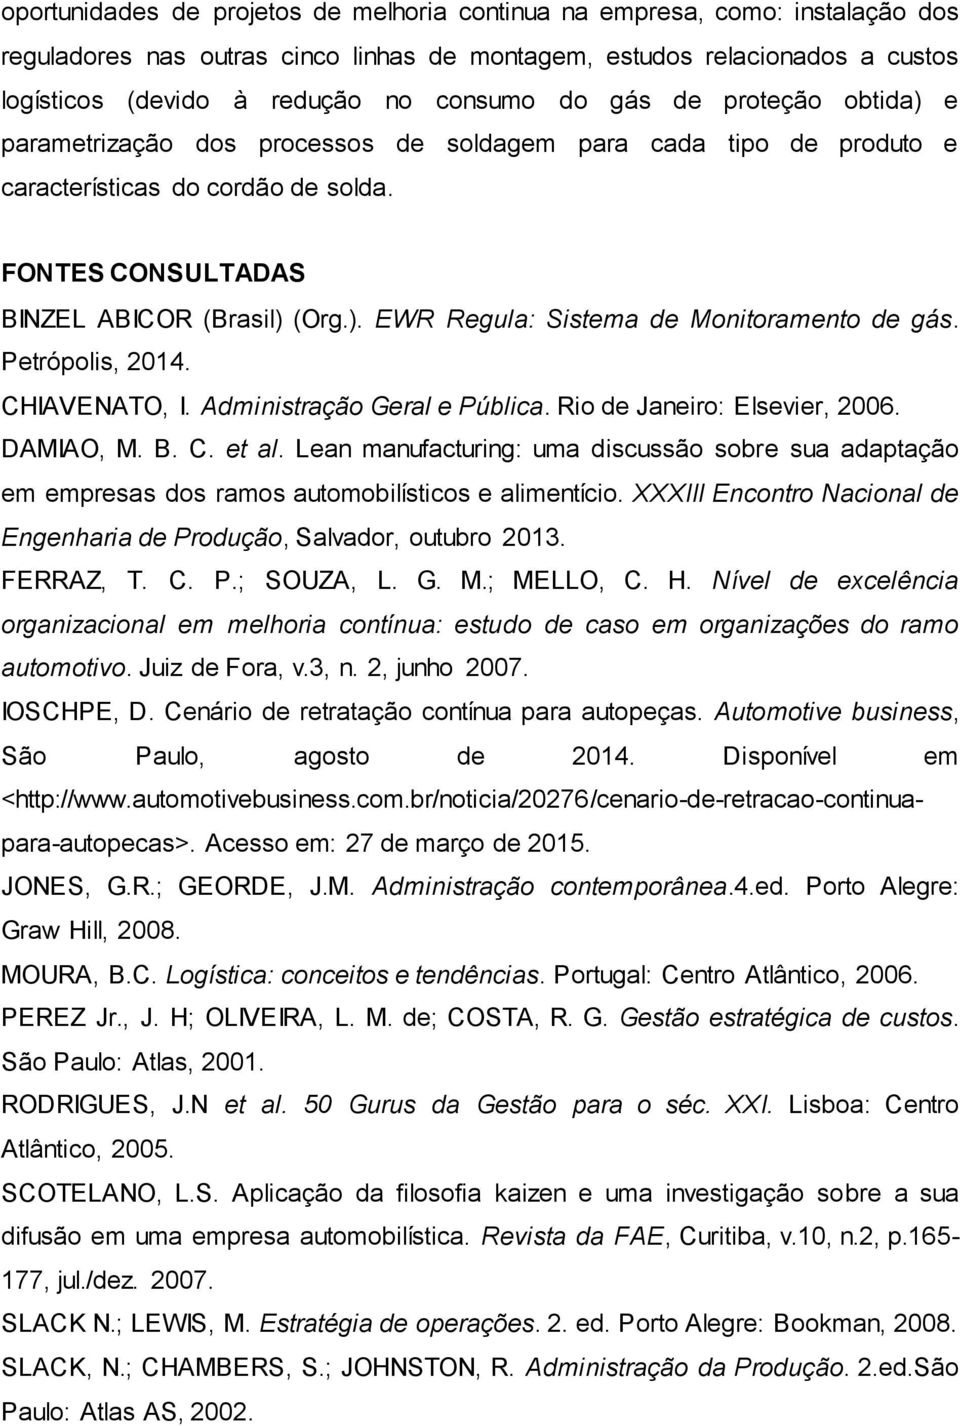 Petrópolis, 2014. CHIAVENATO, I. Administração Geral e Pública. Rio de Janeiro: Elsevier, 2006. DAMIAO, M. B. C. et al.